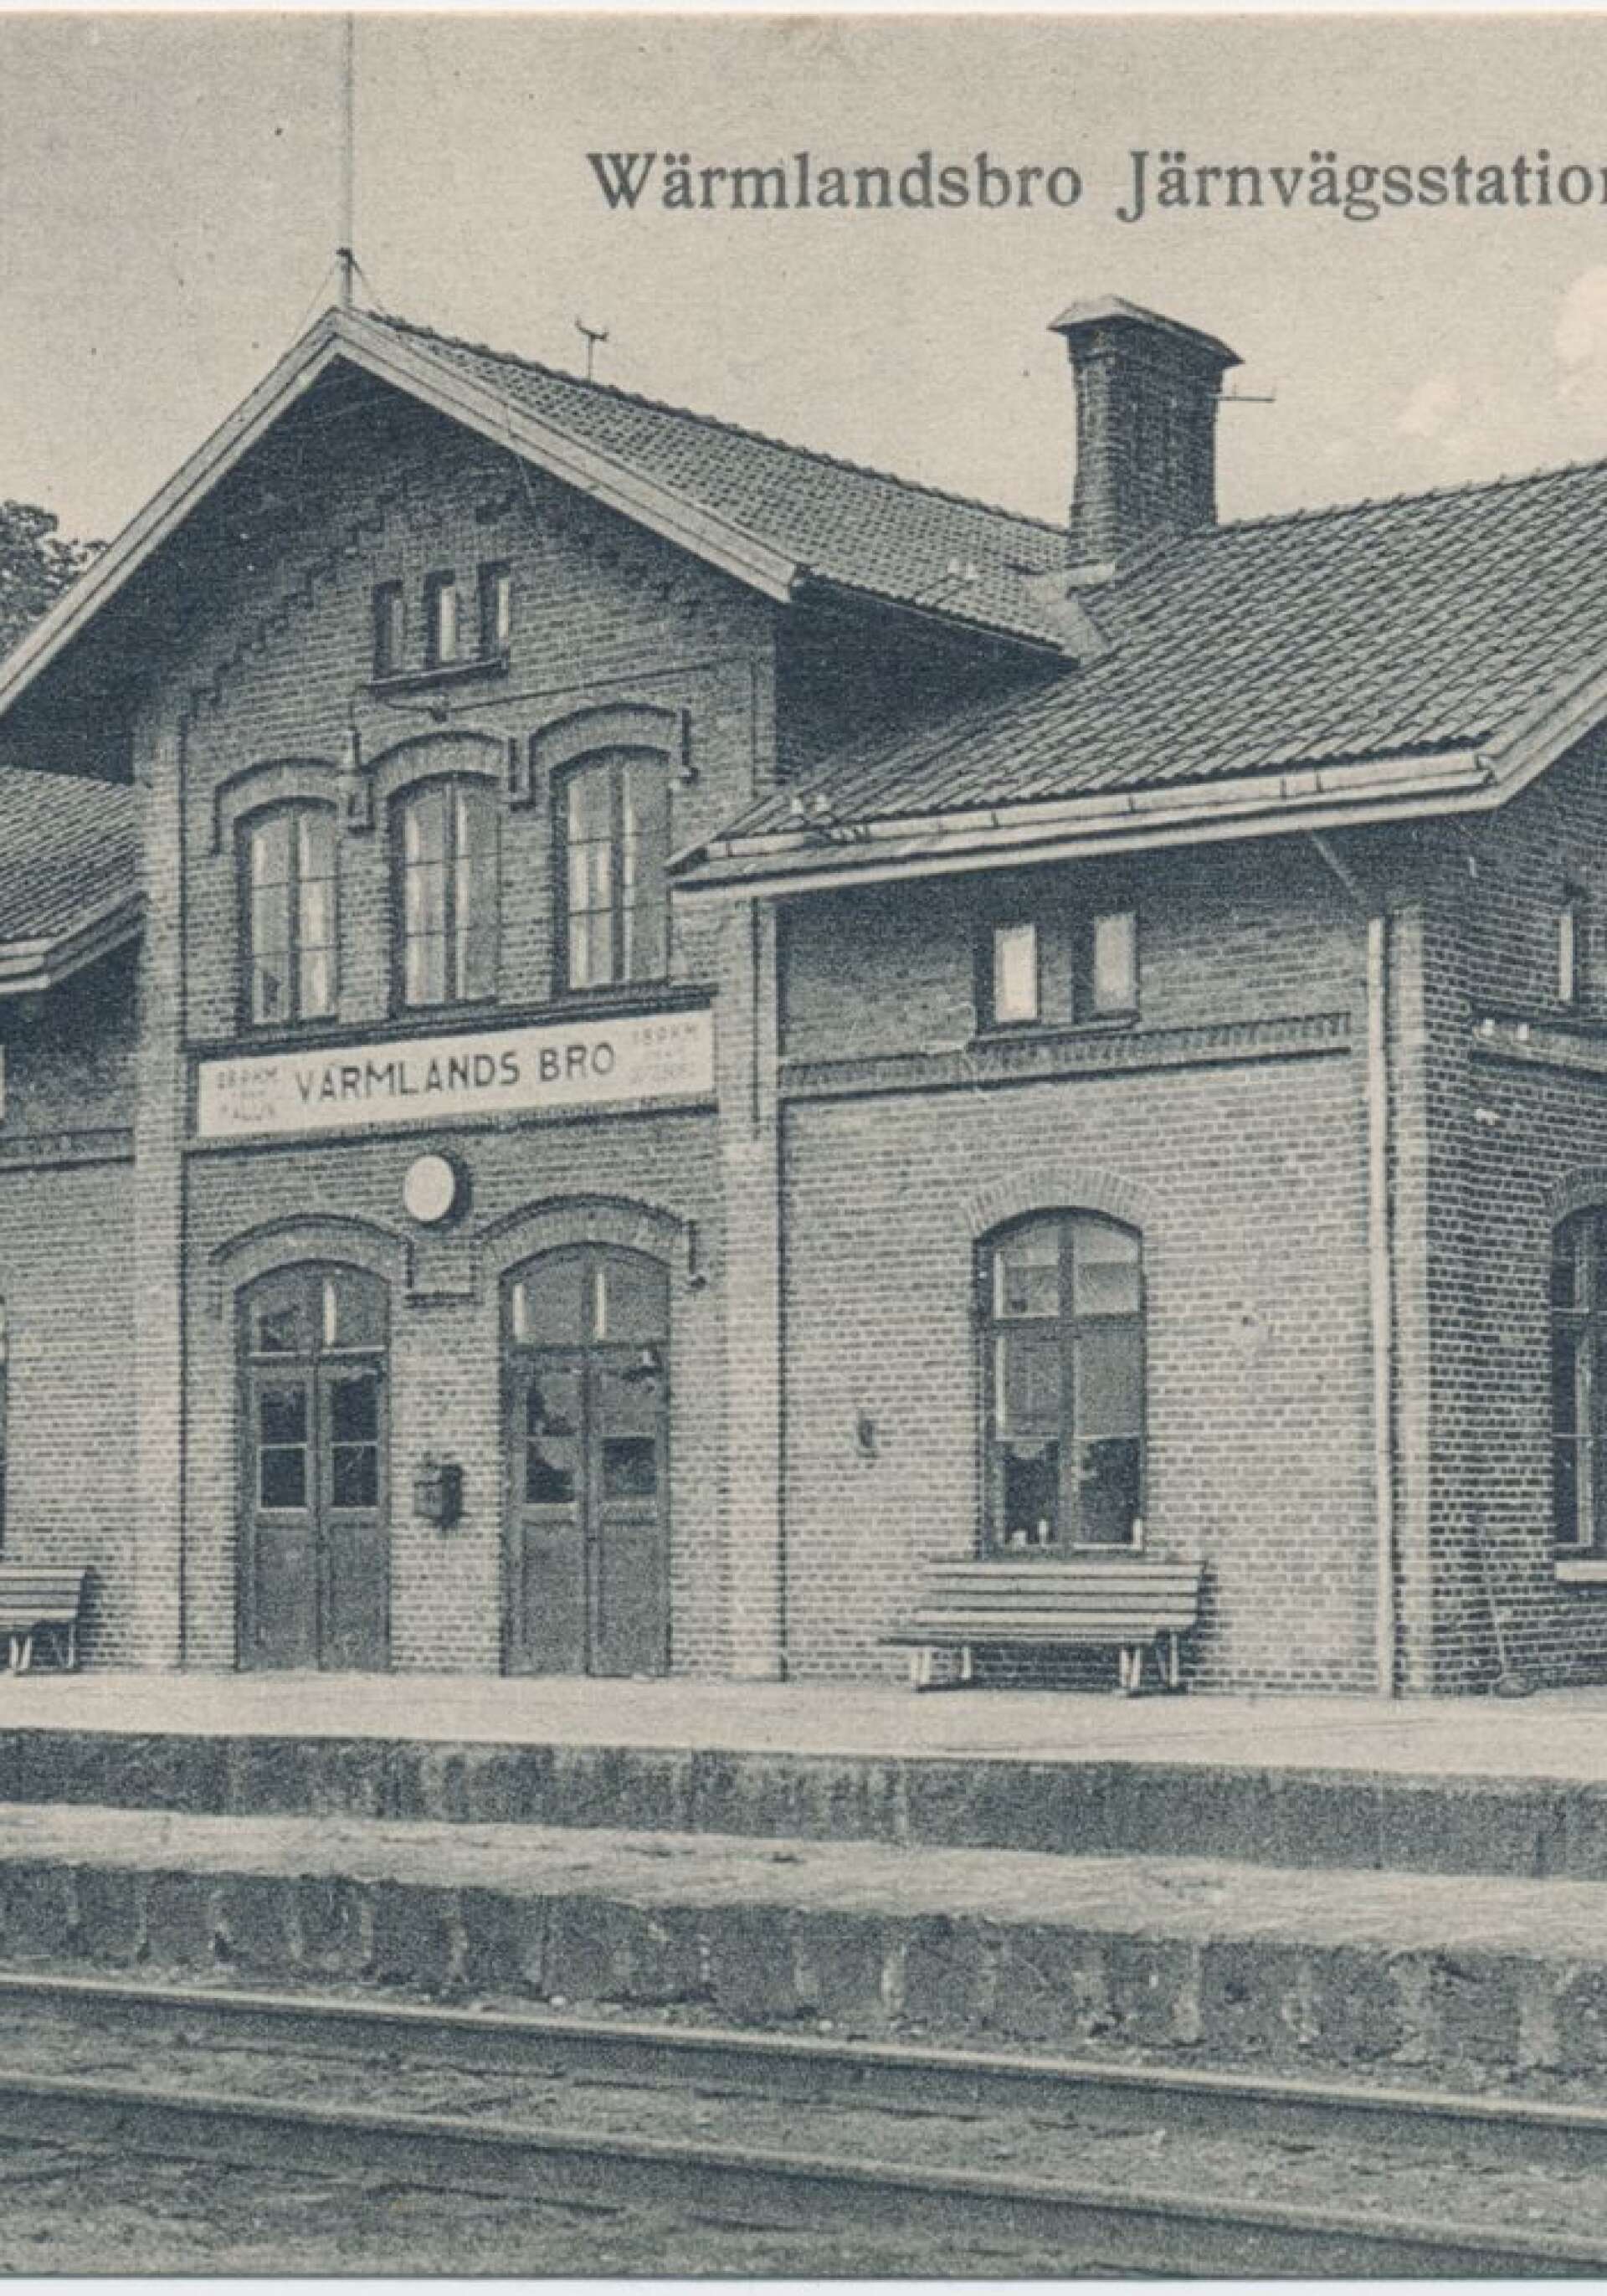 Stationshuset stod klart 1879, samma år som hela Bergslagsbanan från Falun till Göteborg invigdes. Bild från Järnvägsmuseet.